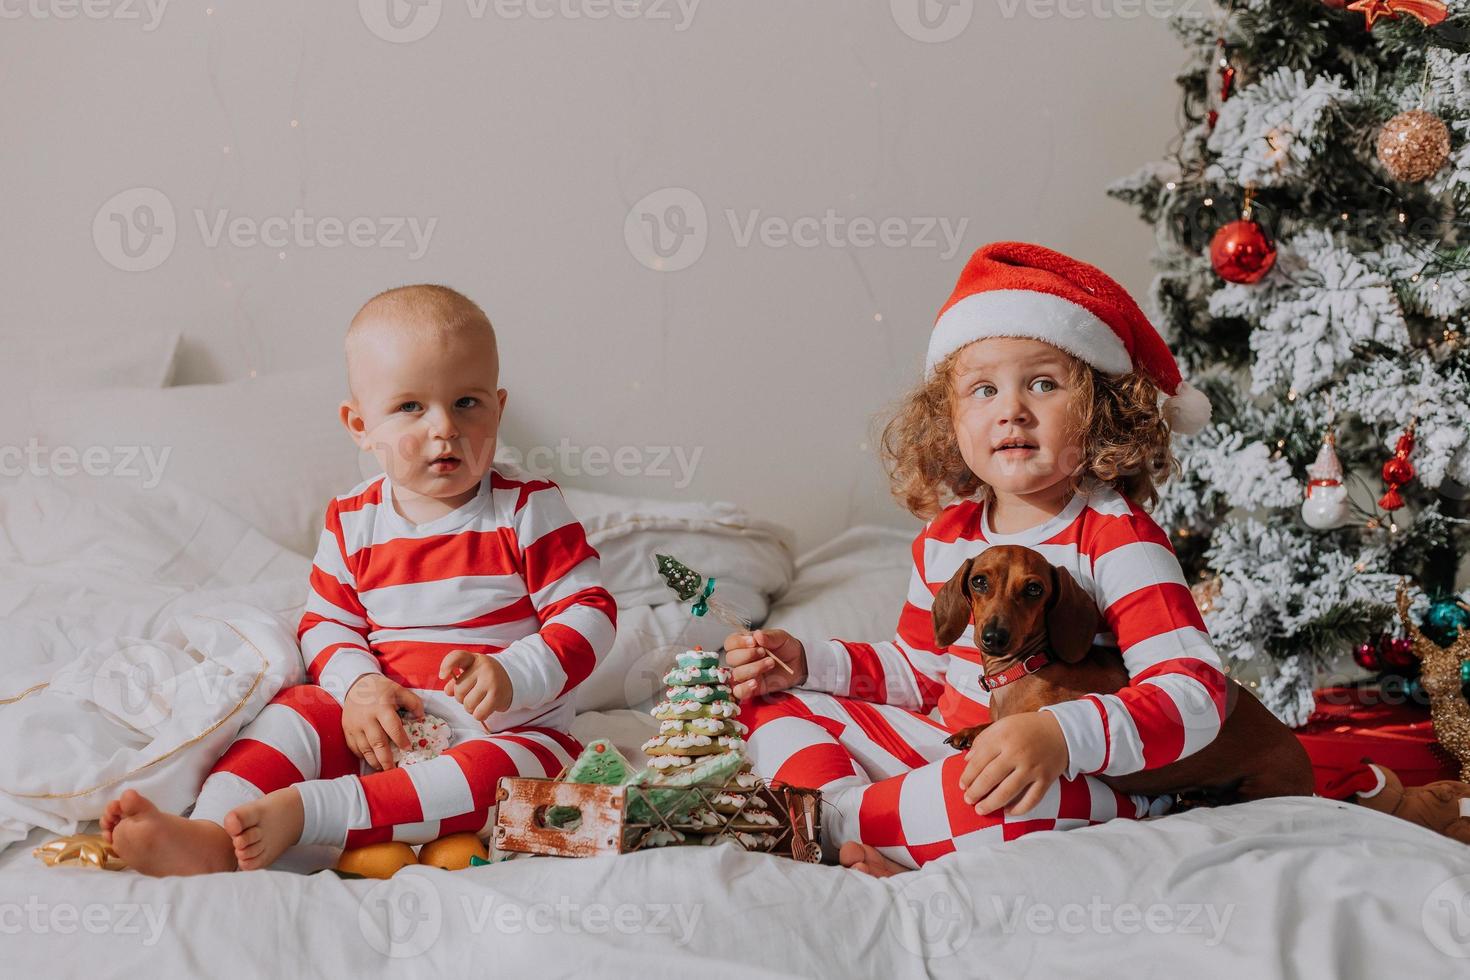 kinder in rot-weißen pyjamas, die im bett sitzen, teilen weihnachtsbonbons miteinander und mit ihrem hund. bruder und schwester, junge und mädchen feiern das neue jahr. Platz für Text. hochwertiges Foto